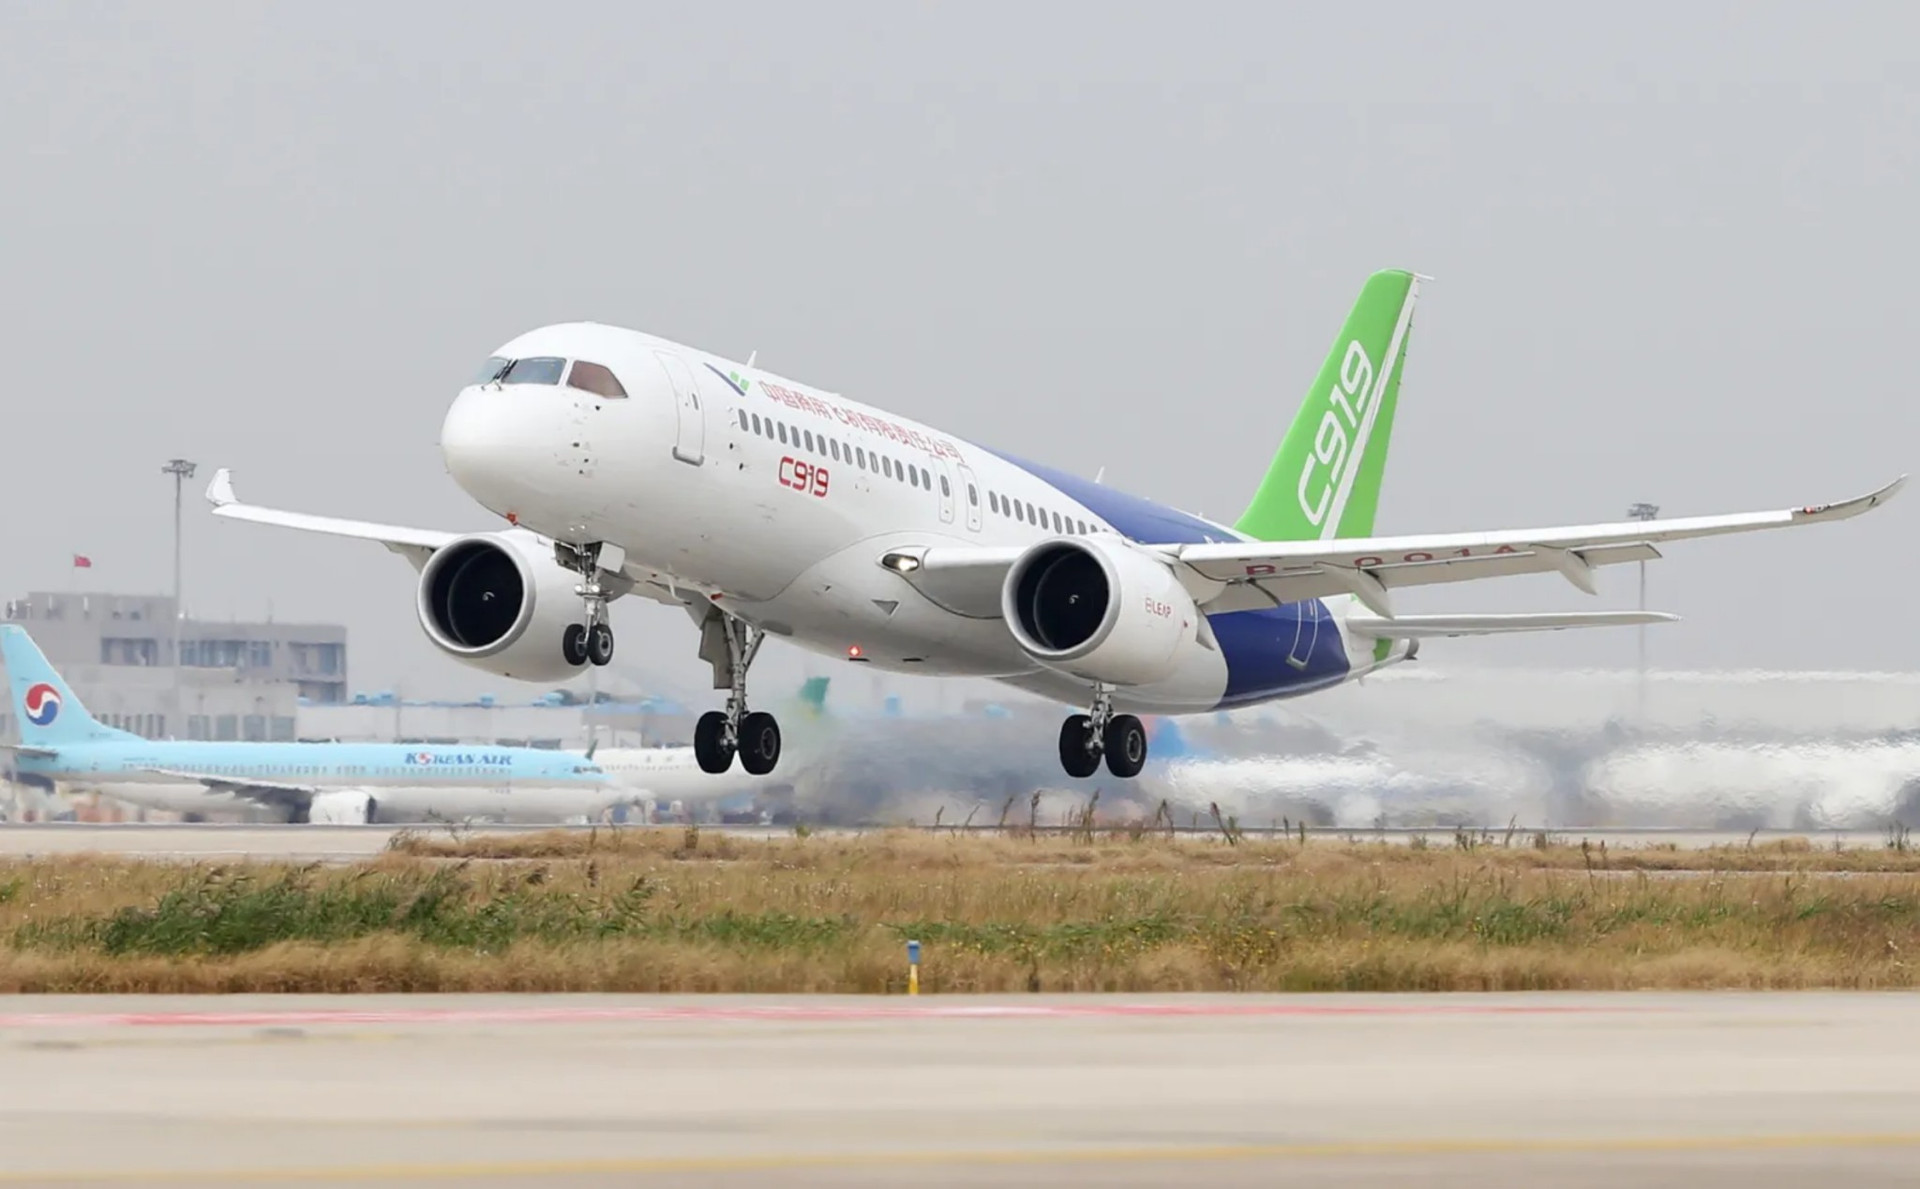 Máy bay 'Made in China' chính thức cất cánh: Nhận được hàng trăm đơn đặt hàng, giá rẻ hơn cả Airbus 